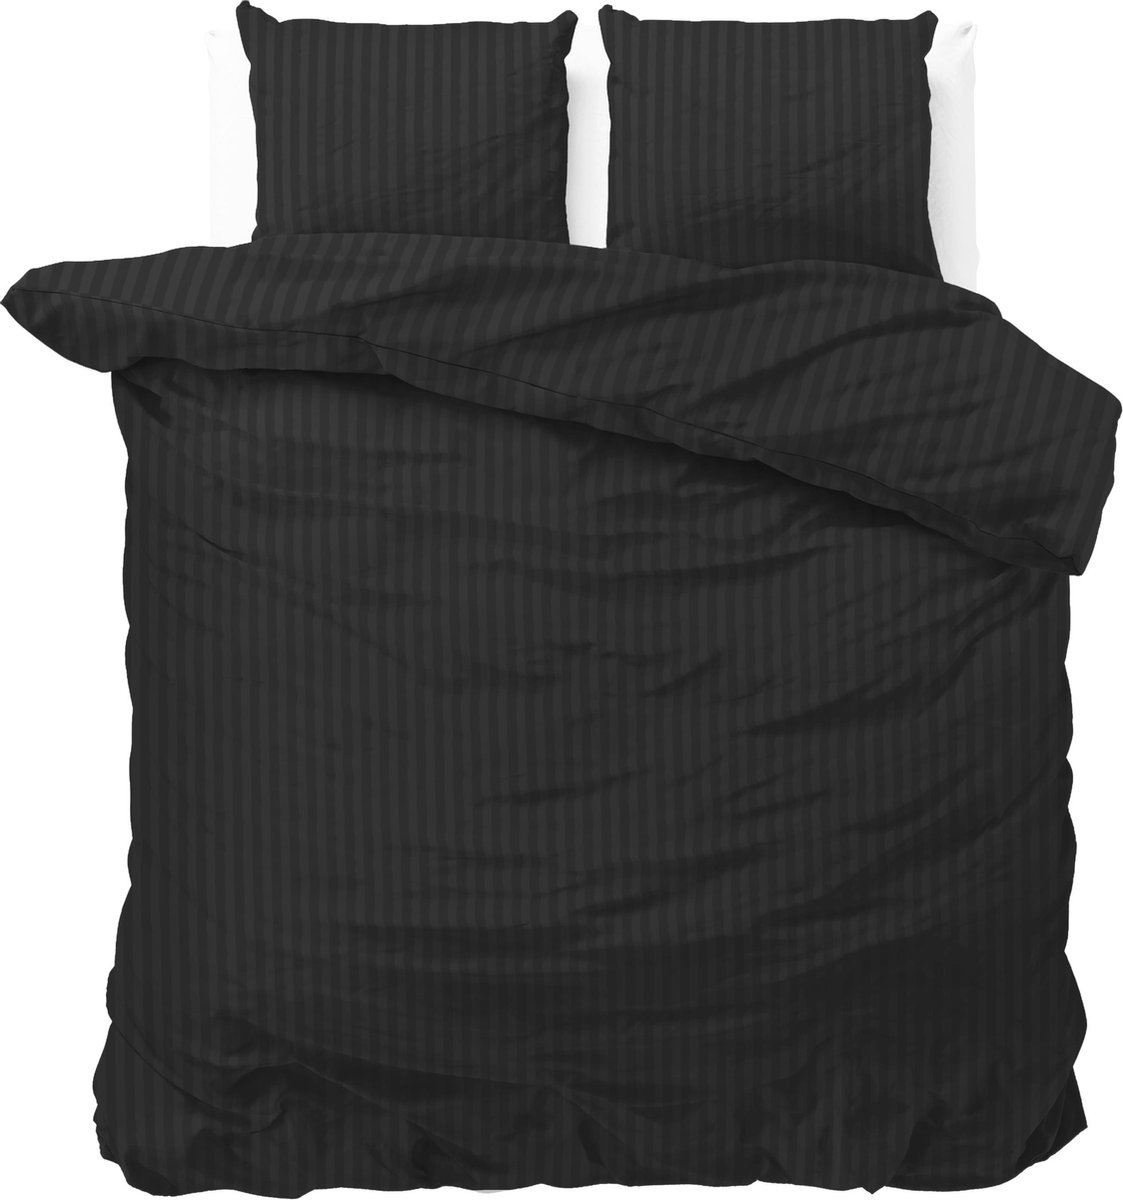 Luxe dekbedovertrek Stripes zwart - 240x200/220 (lits-jumeaux) - zacht en fijne kwaliteit - stijlvolle uitstraling - met handige drukknopen